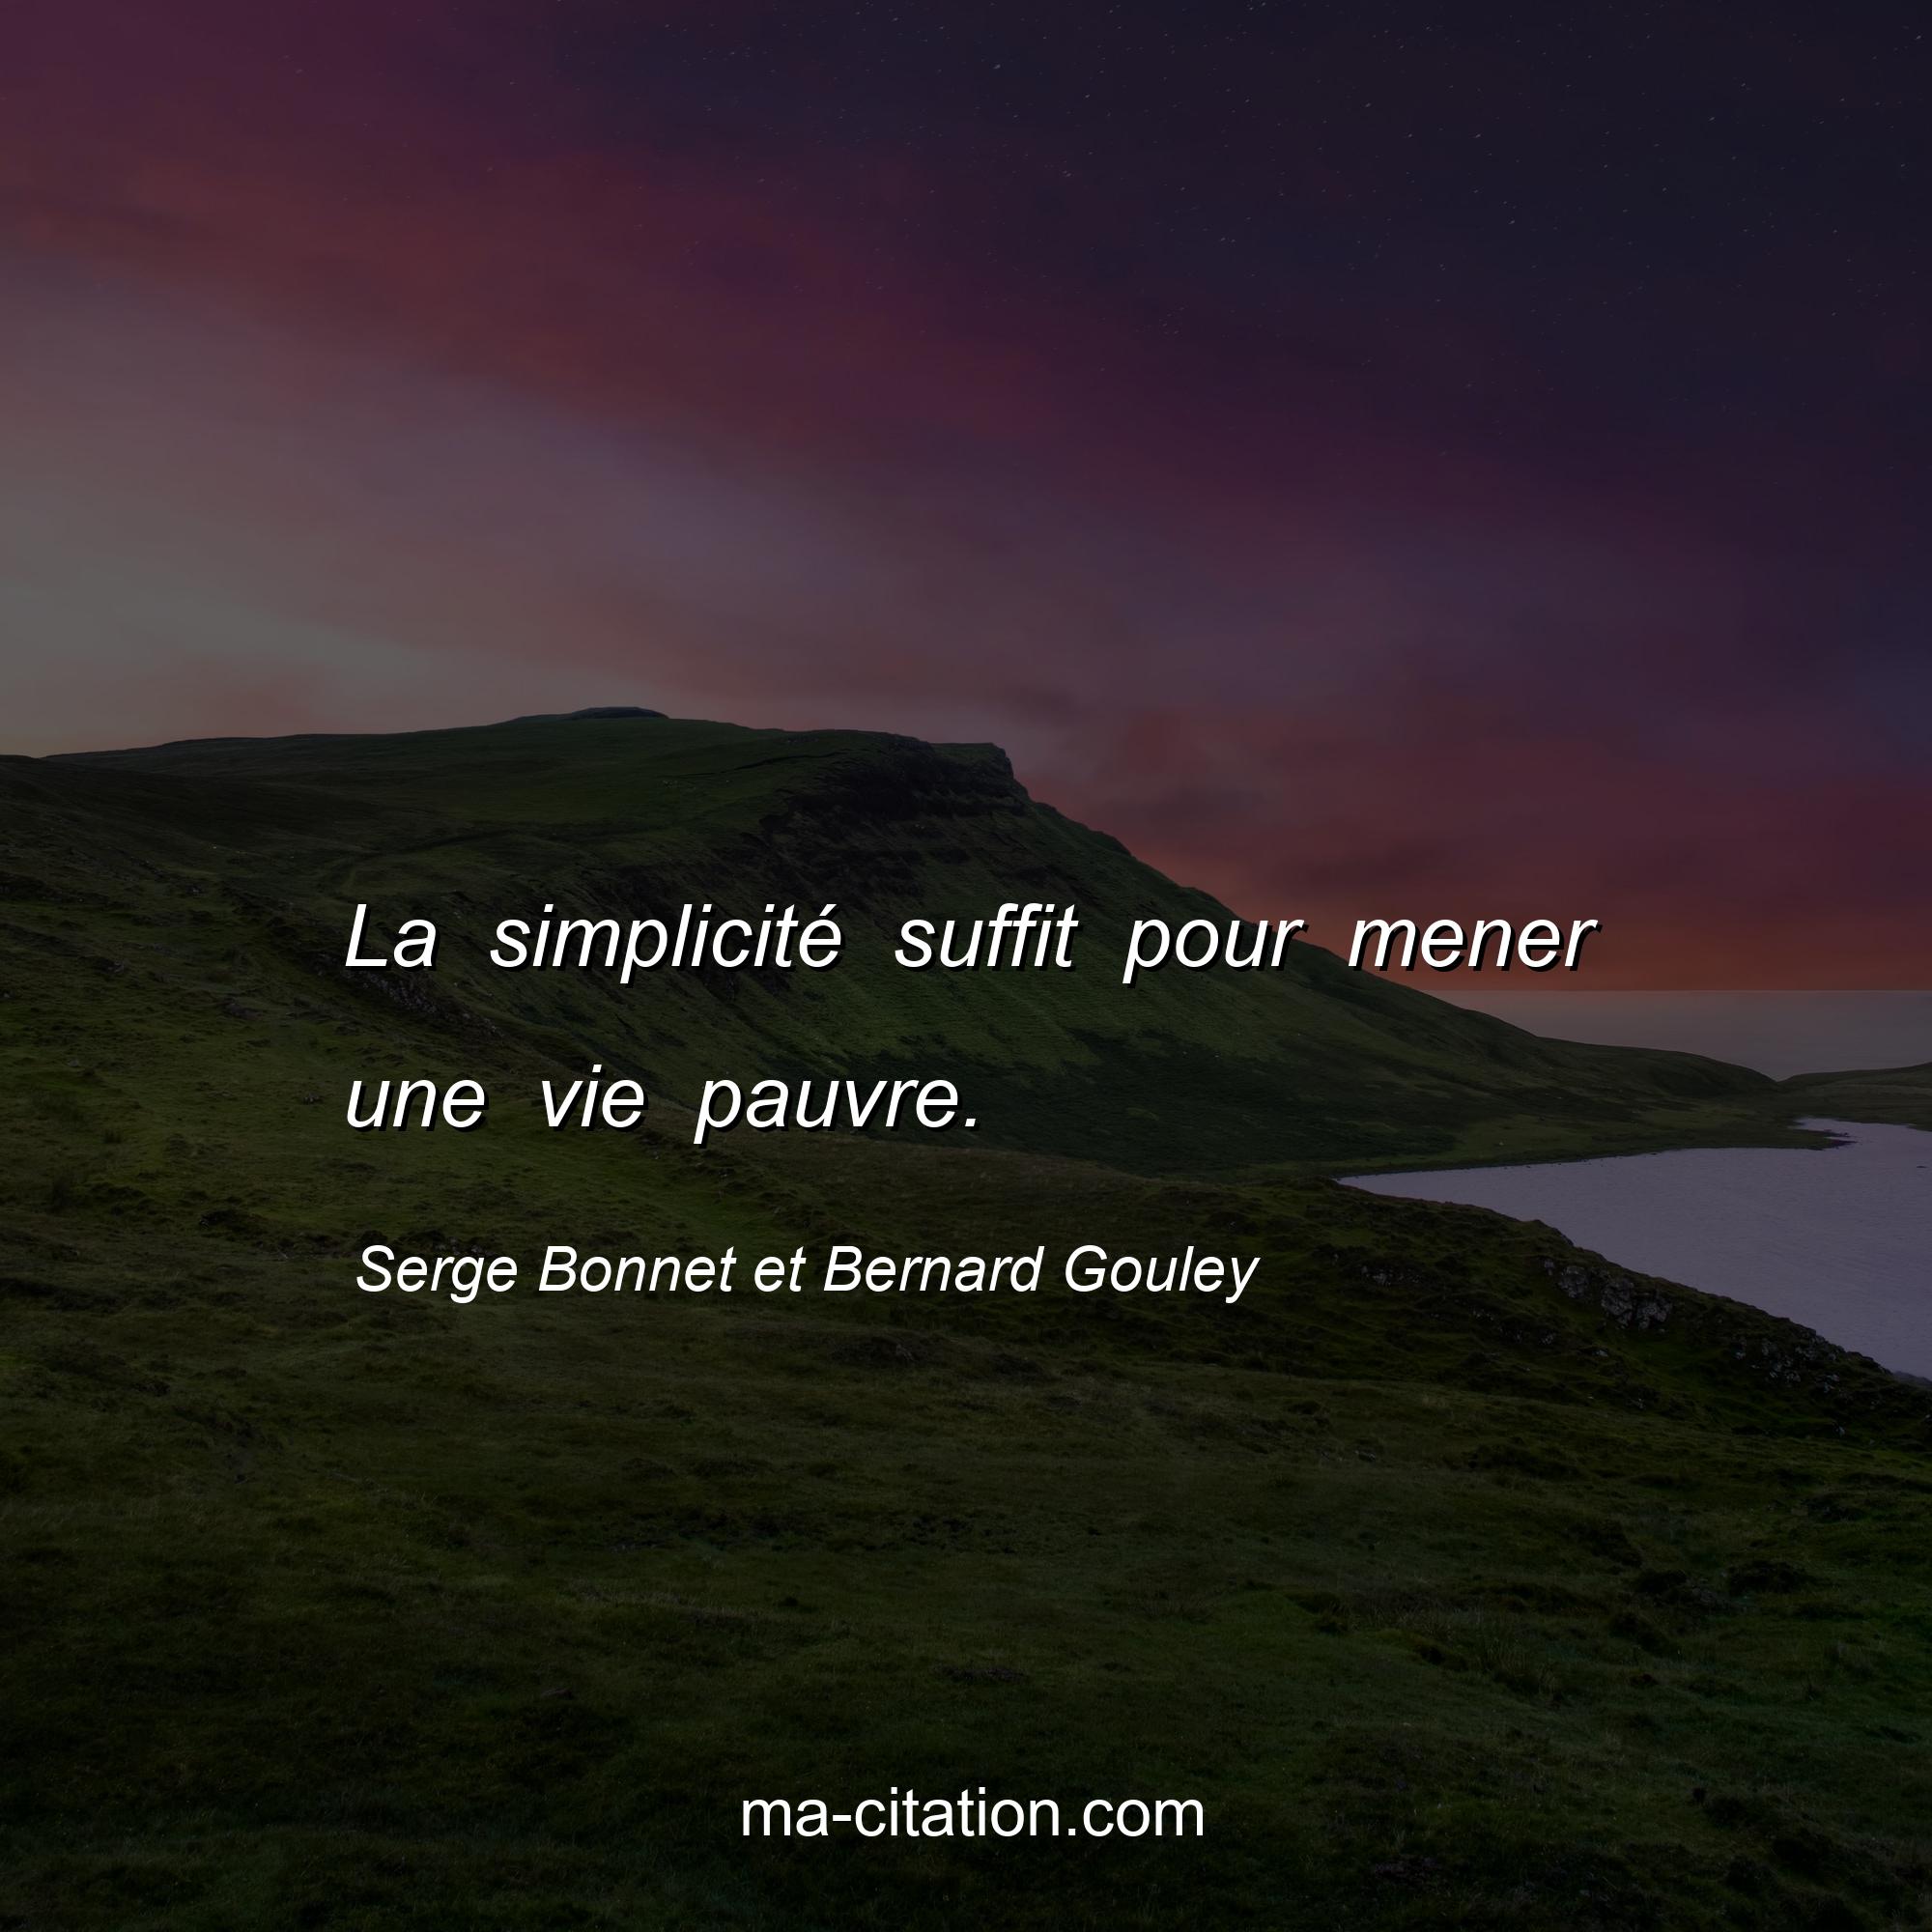 Serge Bonnet et Bernard Gouley : La simplicité suffit pour mener une vie pauvre.